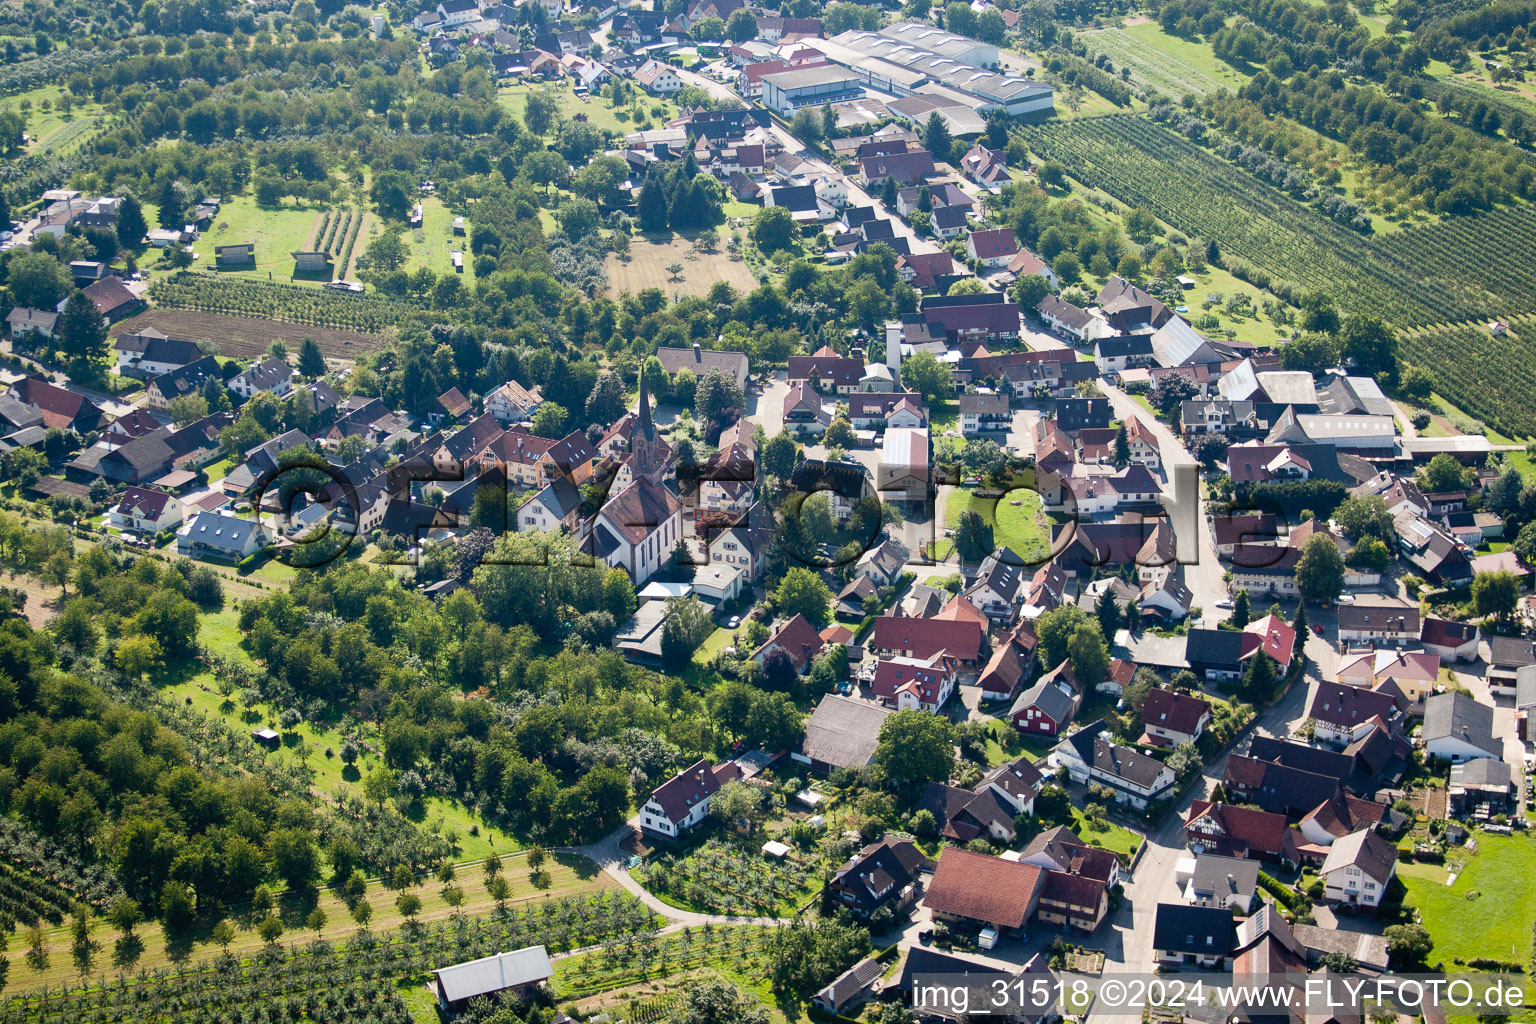 Vue aérienne de Vue des rues et des maisons des quartiers résidentiels à le quartier Mösbach in Achern dans le département Bade-Wurtemberg, Allemagne